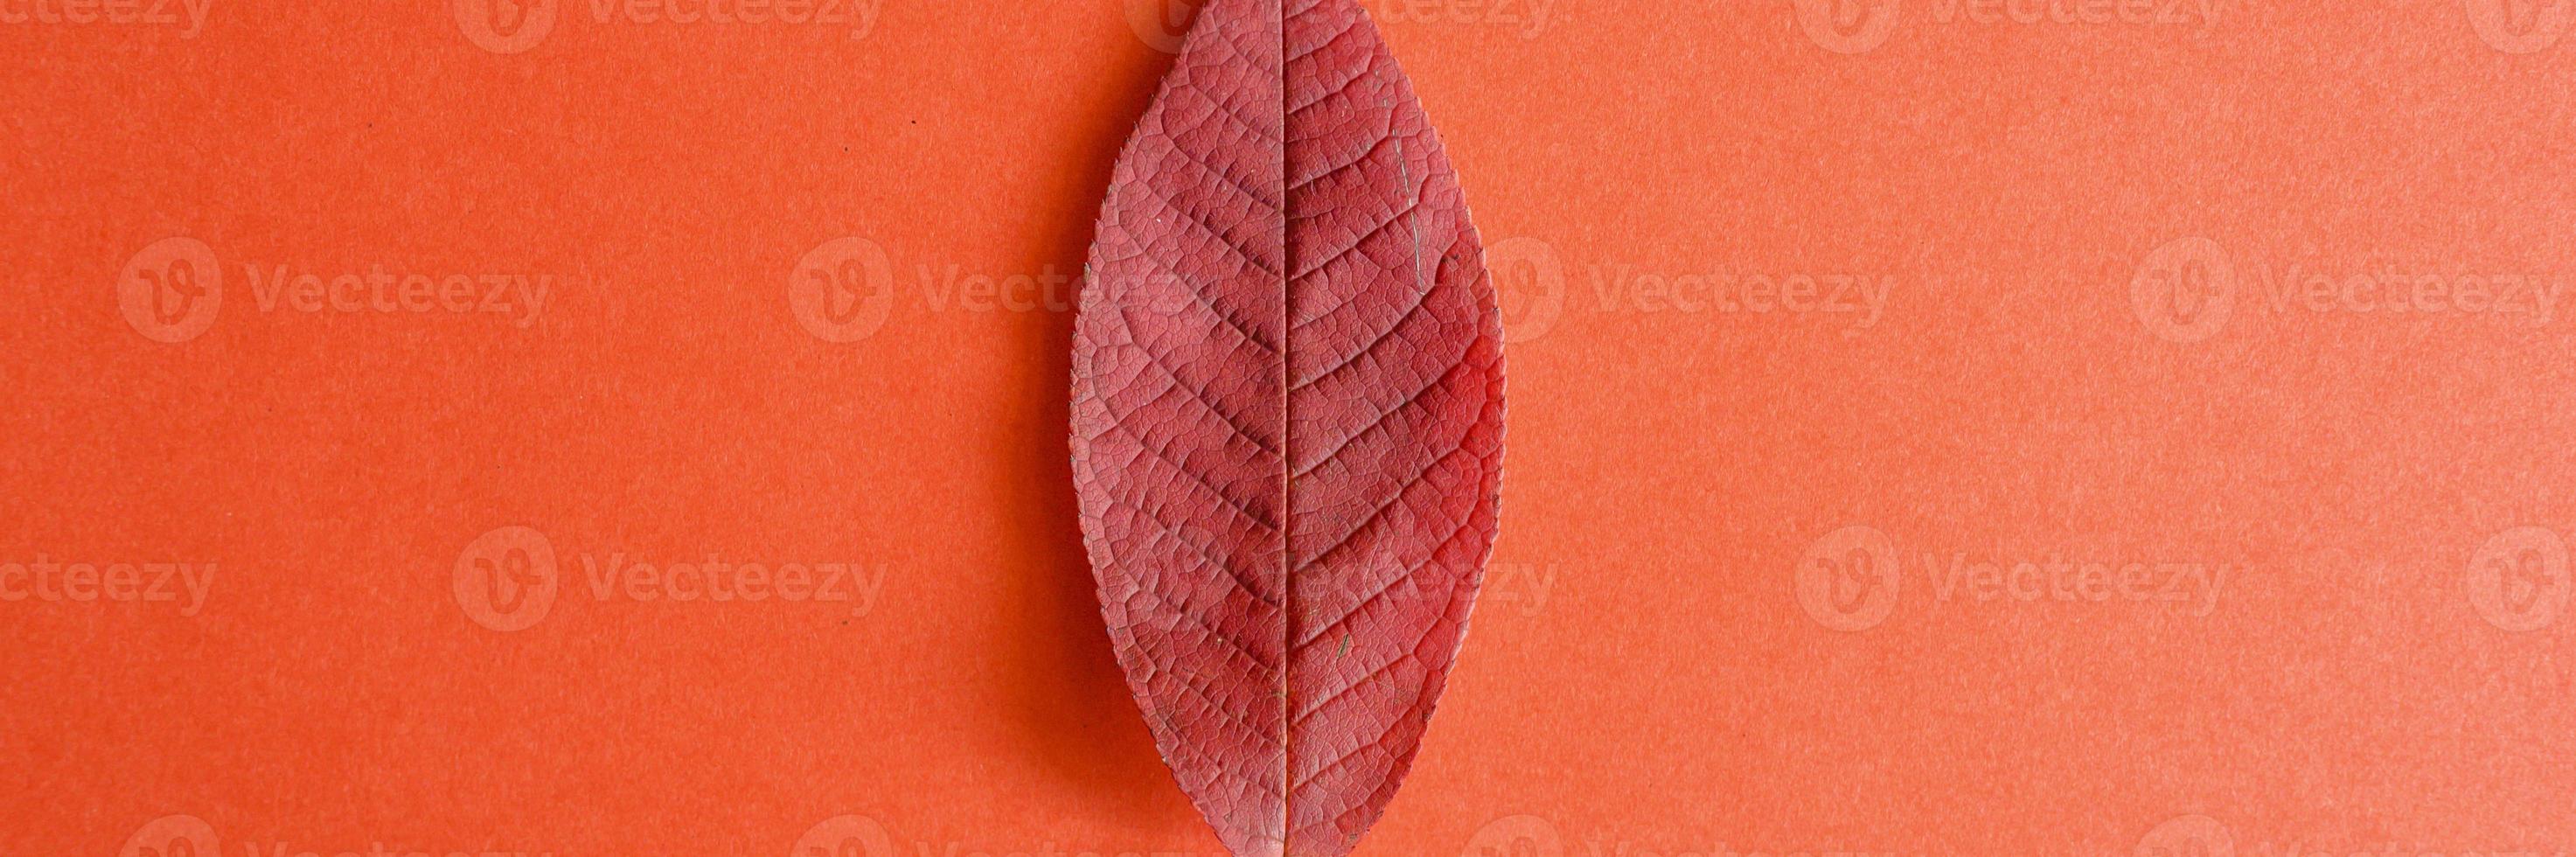 rood gevallen kersen herfstblad op een rode papier achtergrond foto